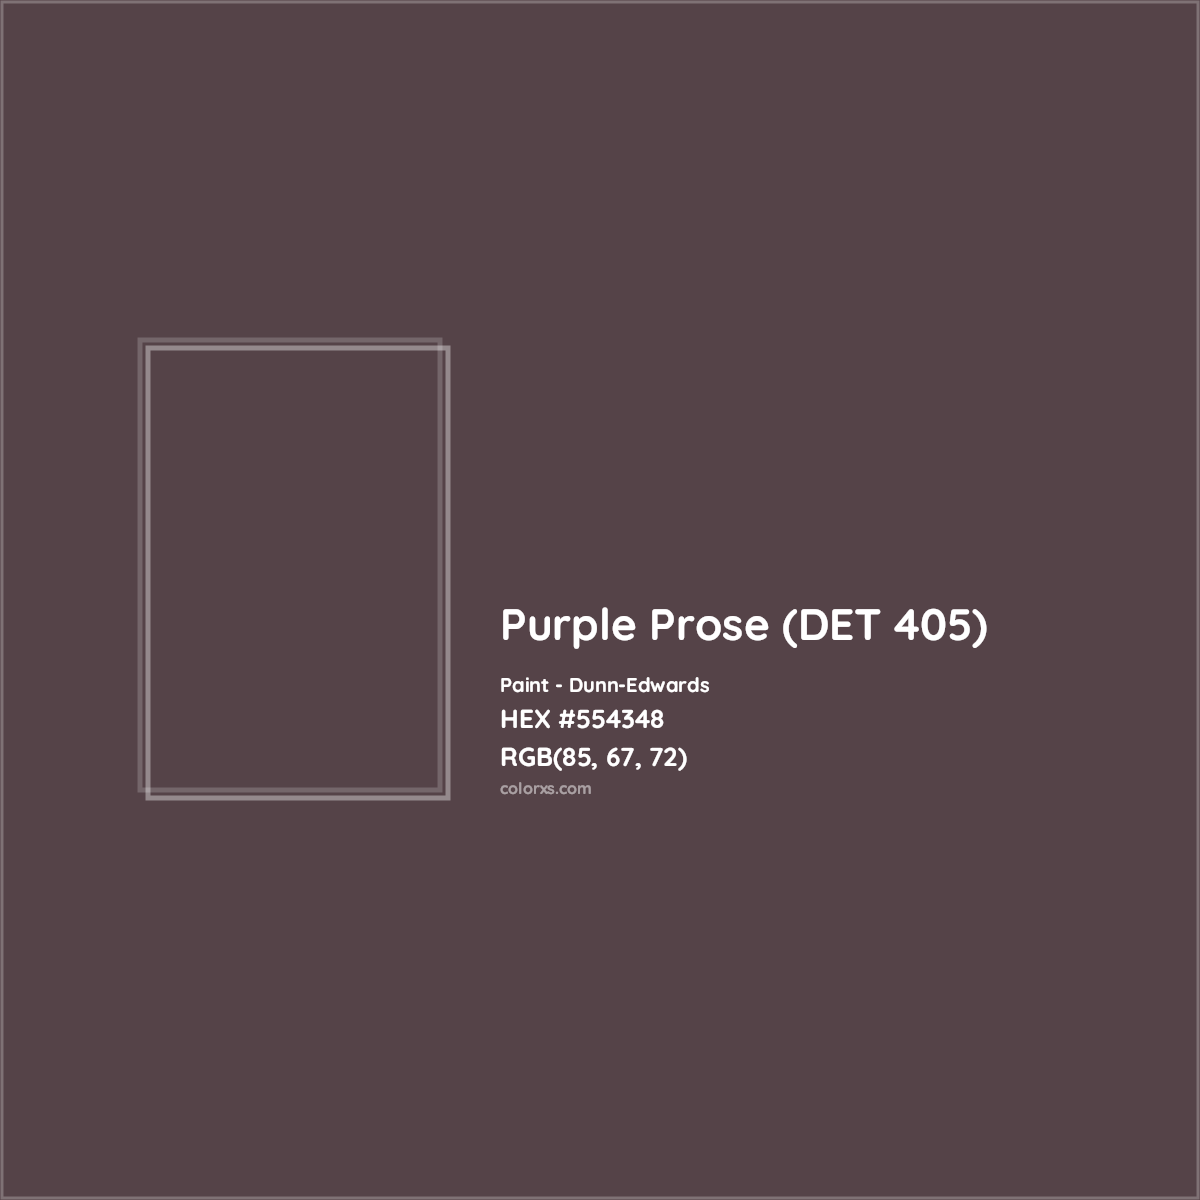 HEX #554348 Purple Prose (DET 405) Paint Dunn-Edwards - Color Code